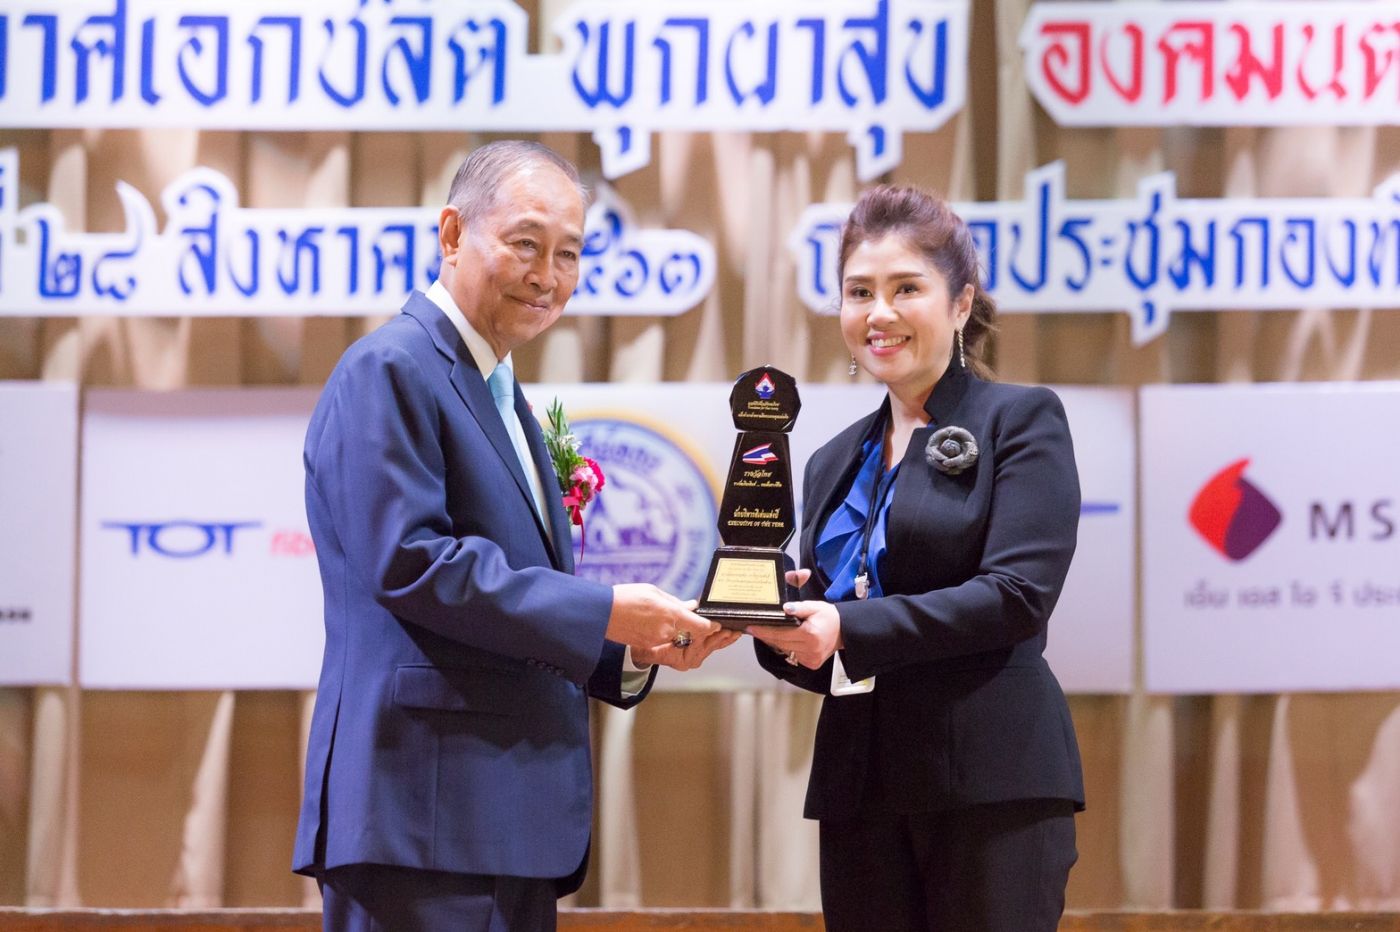 CEO เนเจอร์ เฮิร์บ คว้ารางวัล “นักบริหารดีเด่นแห่งปี ประจำปี 2563” จากมูลนิธิเพื่อสังคมไทย